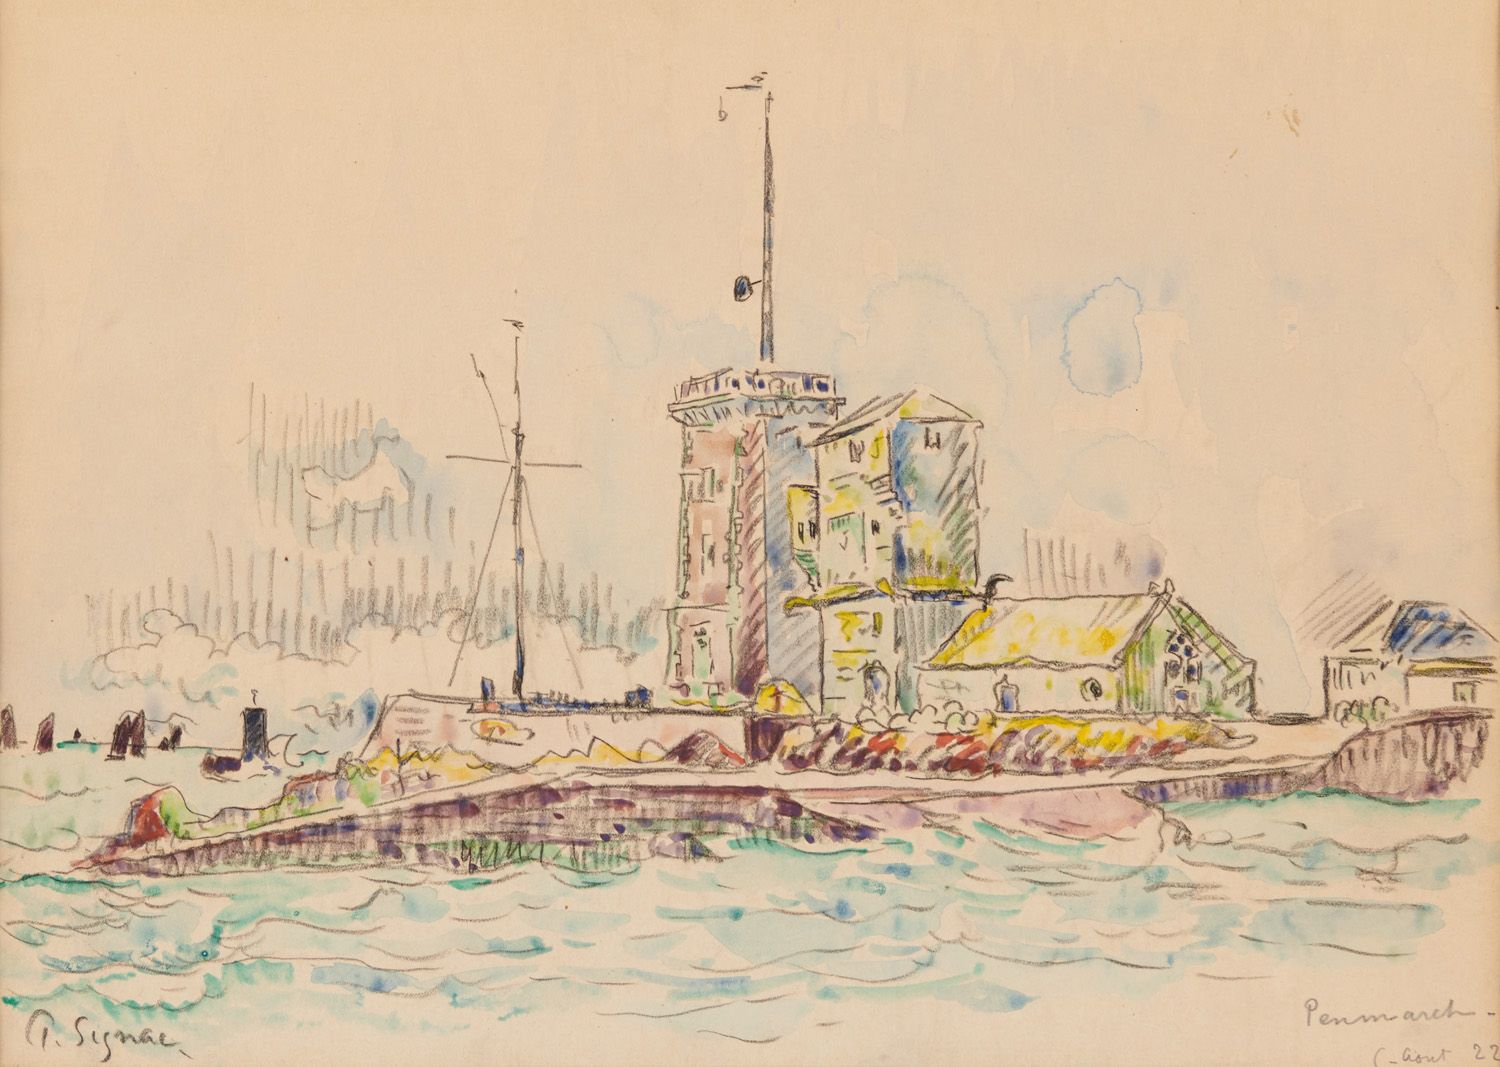 Null Paul SIGNAC 1863-1935

笔架山，1922年

左下角有签名的水彩画，右下角有位置和日期

27,7 x 35,5 



买方将&hellip;